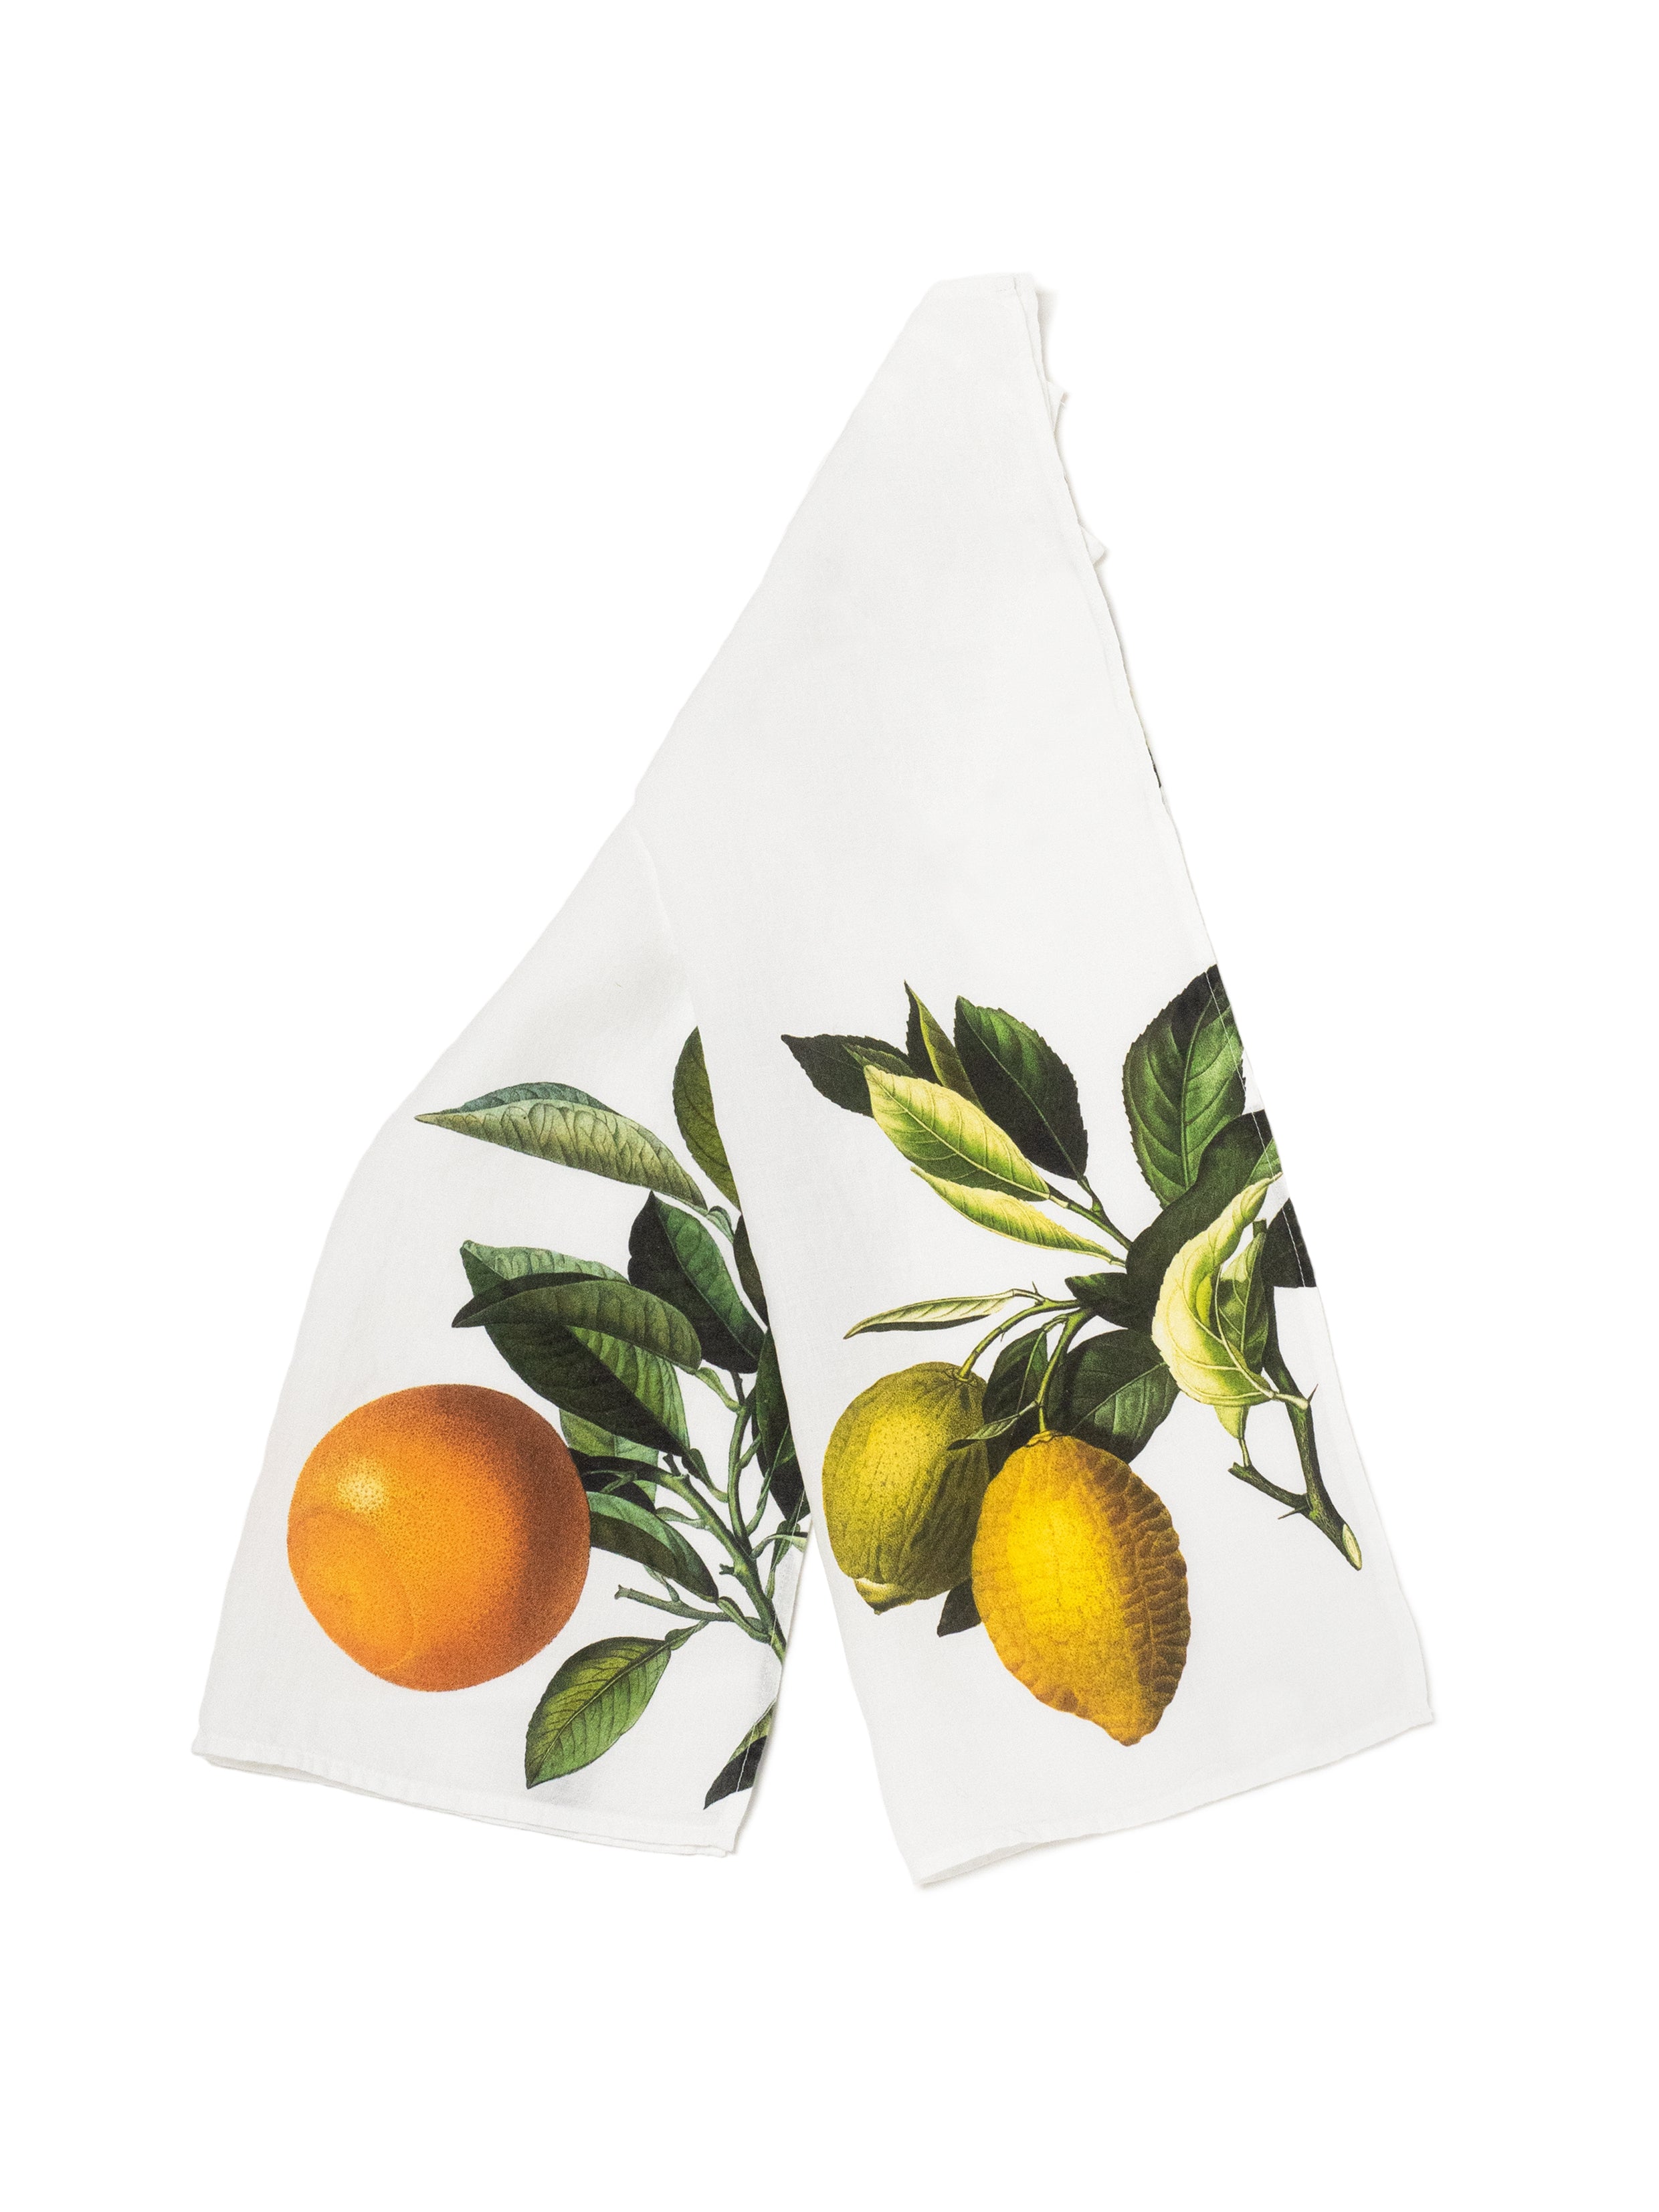 The Linoroom “Orange & Lemon,” Pair of linen printed tea towels.